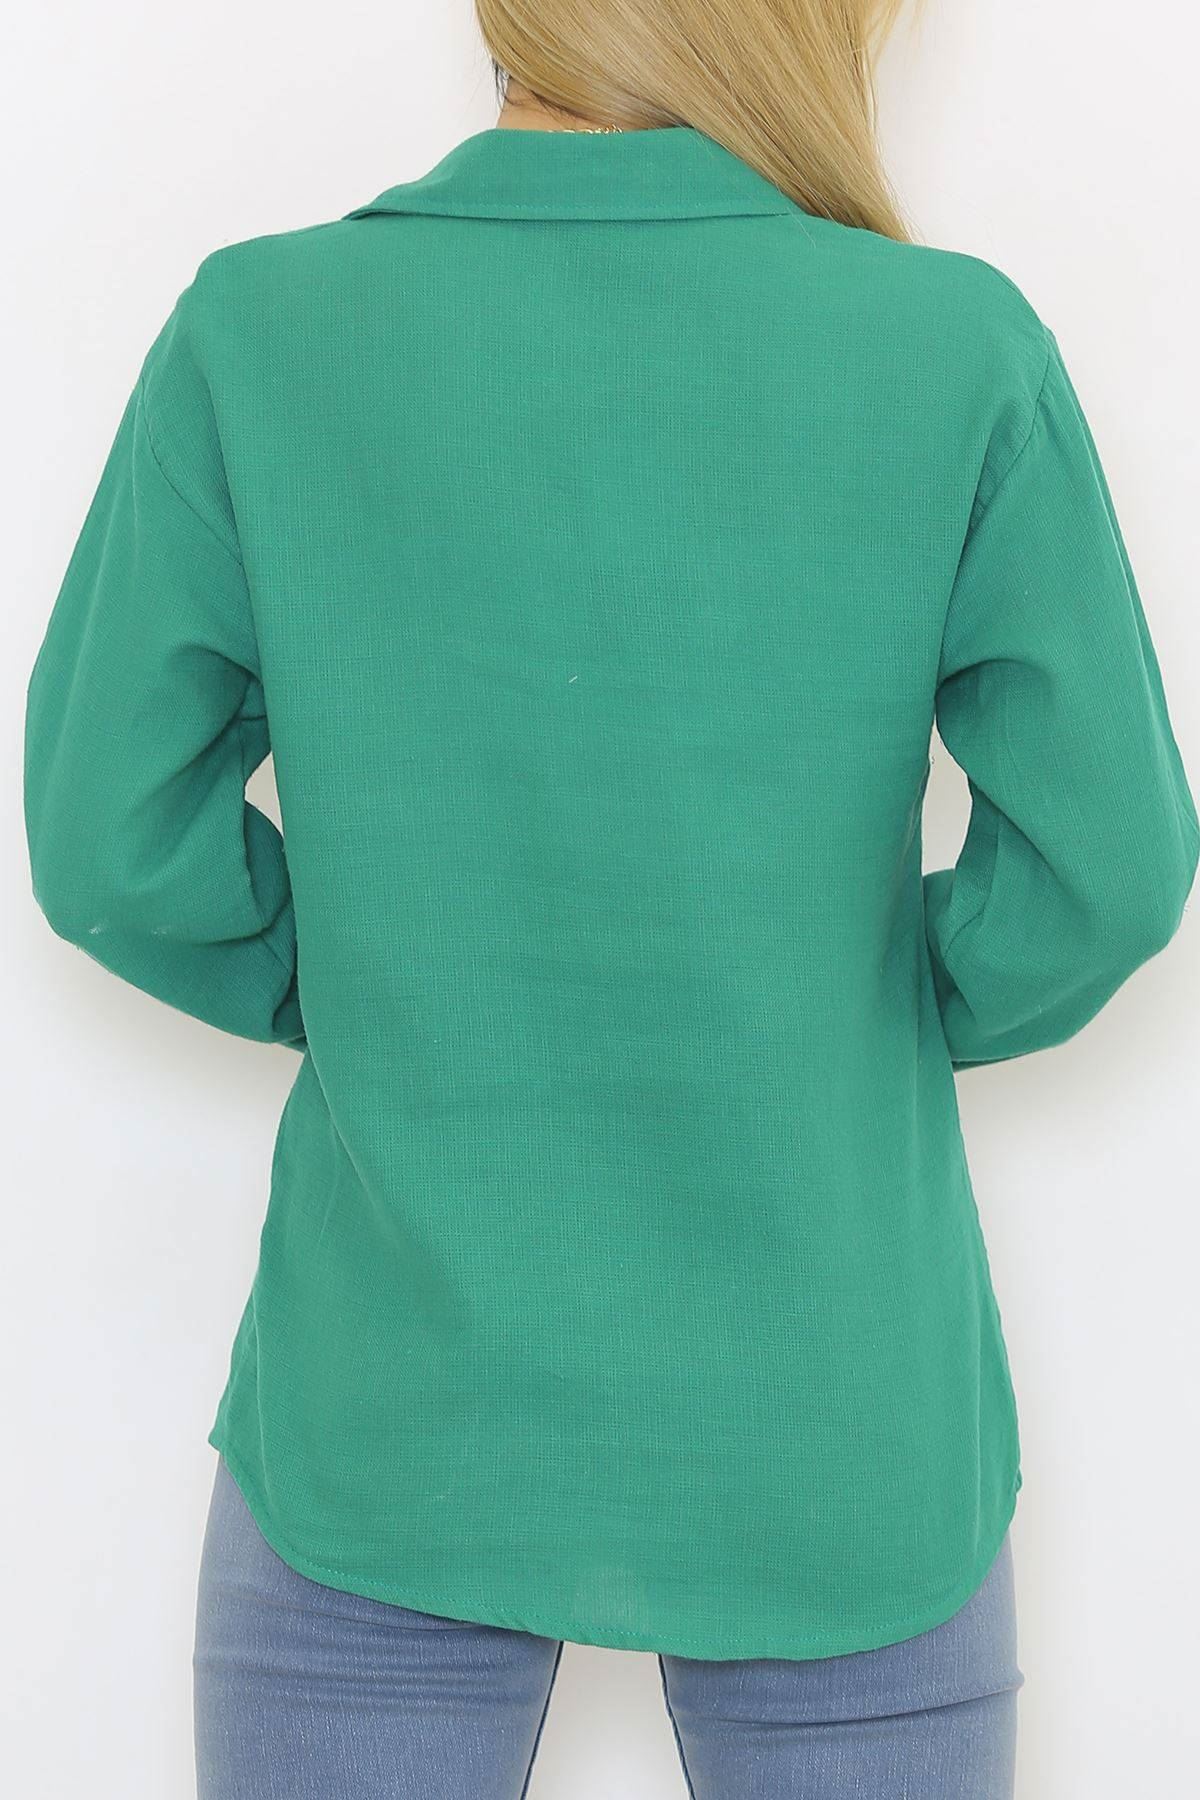 Cepli Gömlek Yeşil - 2149.1602.